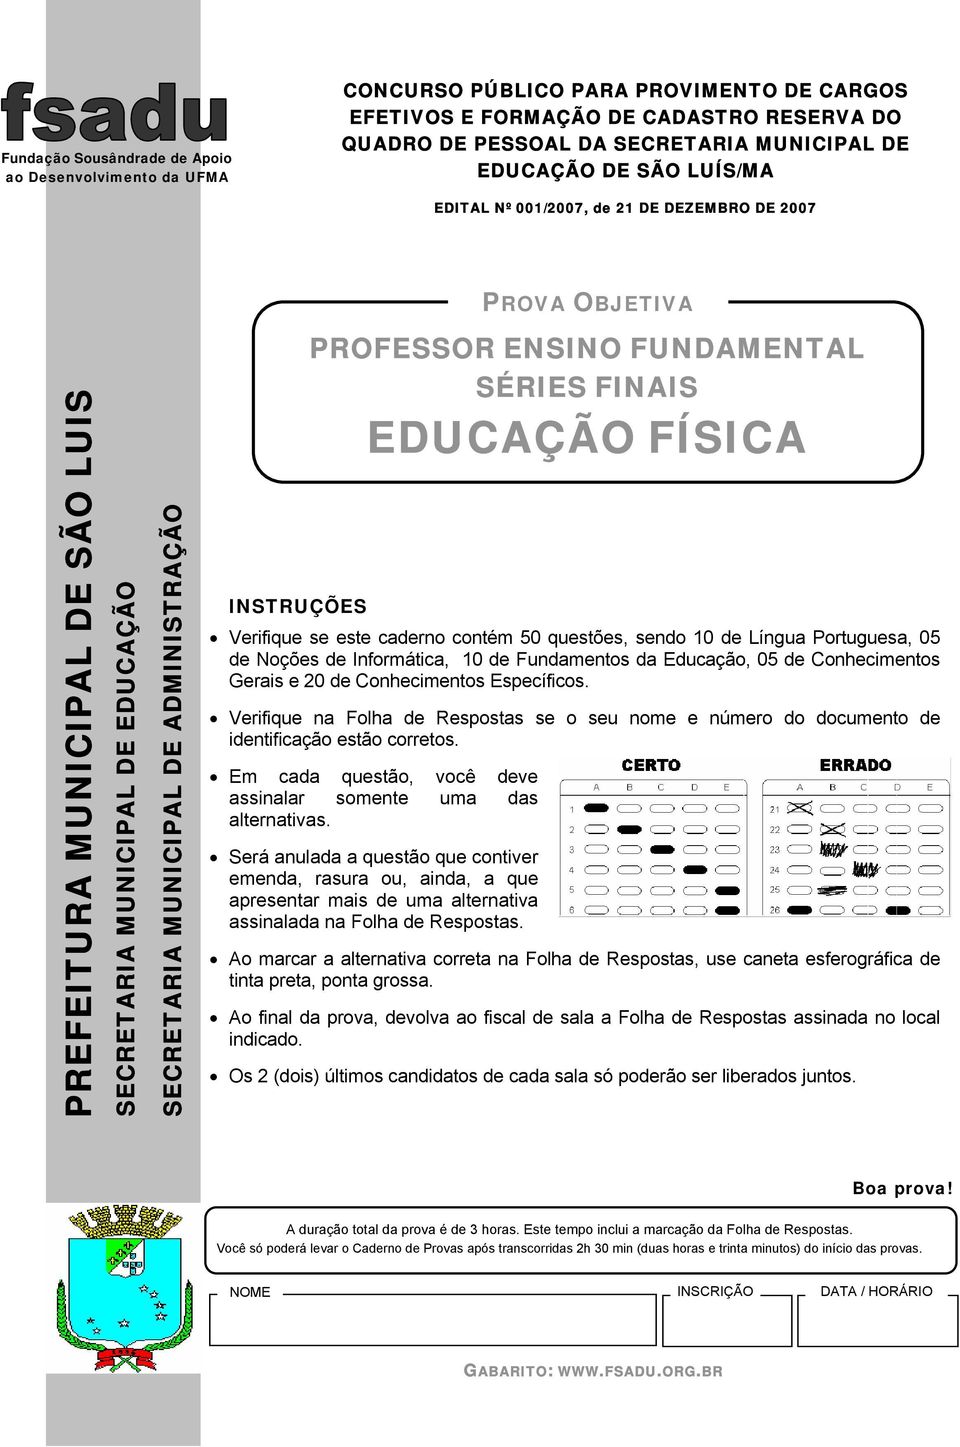 contém 50 questões, sendo 10 de Língua Portuguesa, 05 de Noções de Informática, 10 de Fundamentos da Educação, 05 de Conhecimentos Gerais e 20 de Conhecimentos Específicos.